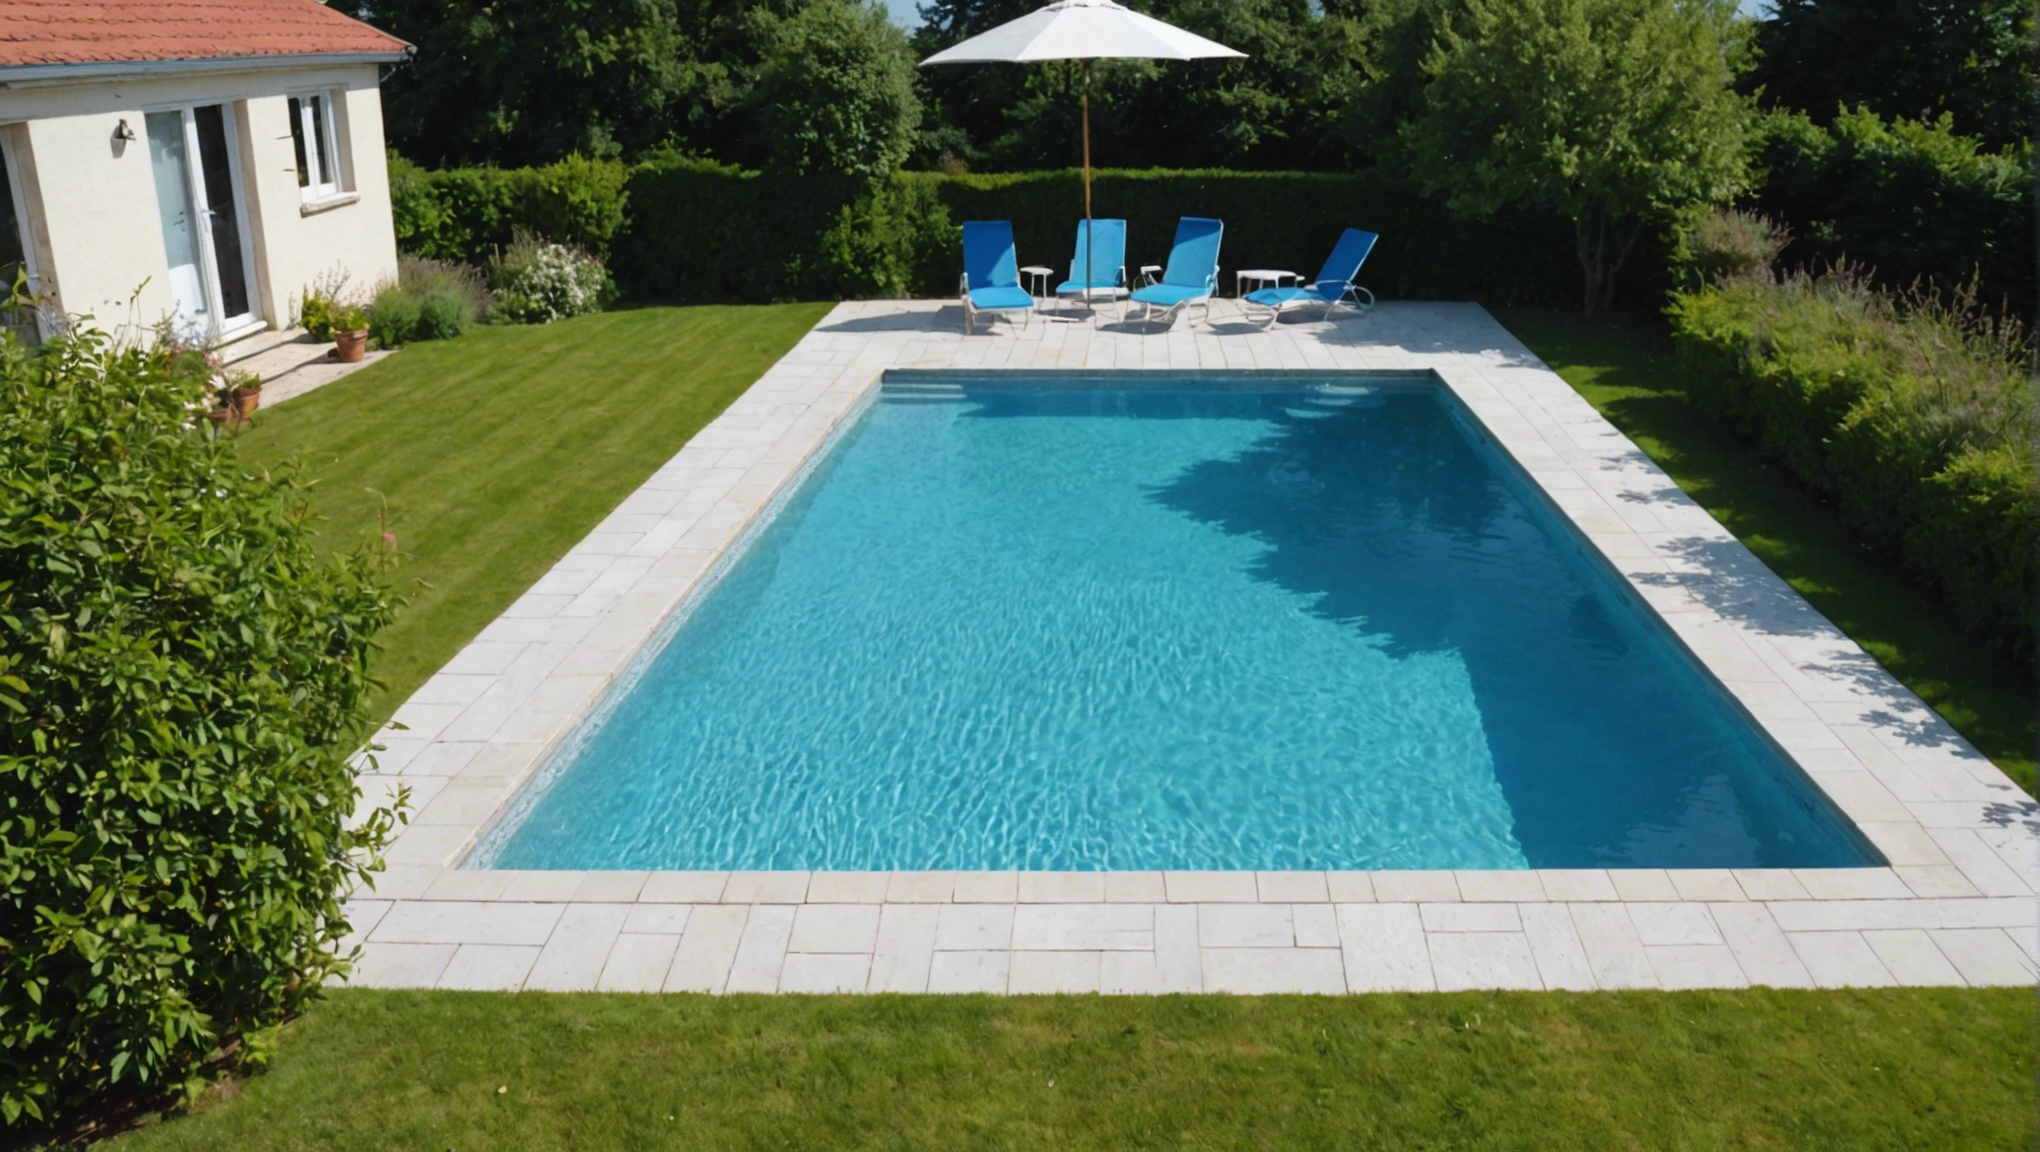 découvrez nos conseils pour créer un aménagement paysager harmonieux autour de votre piscine et profiter d'un espace extérieur agréable et esthétique.